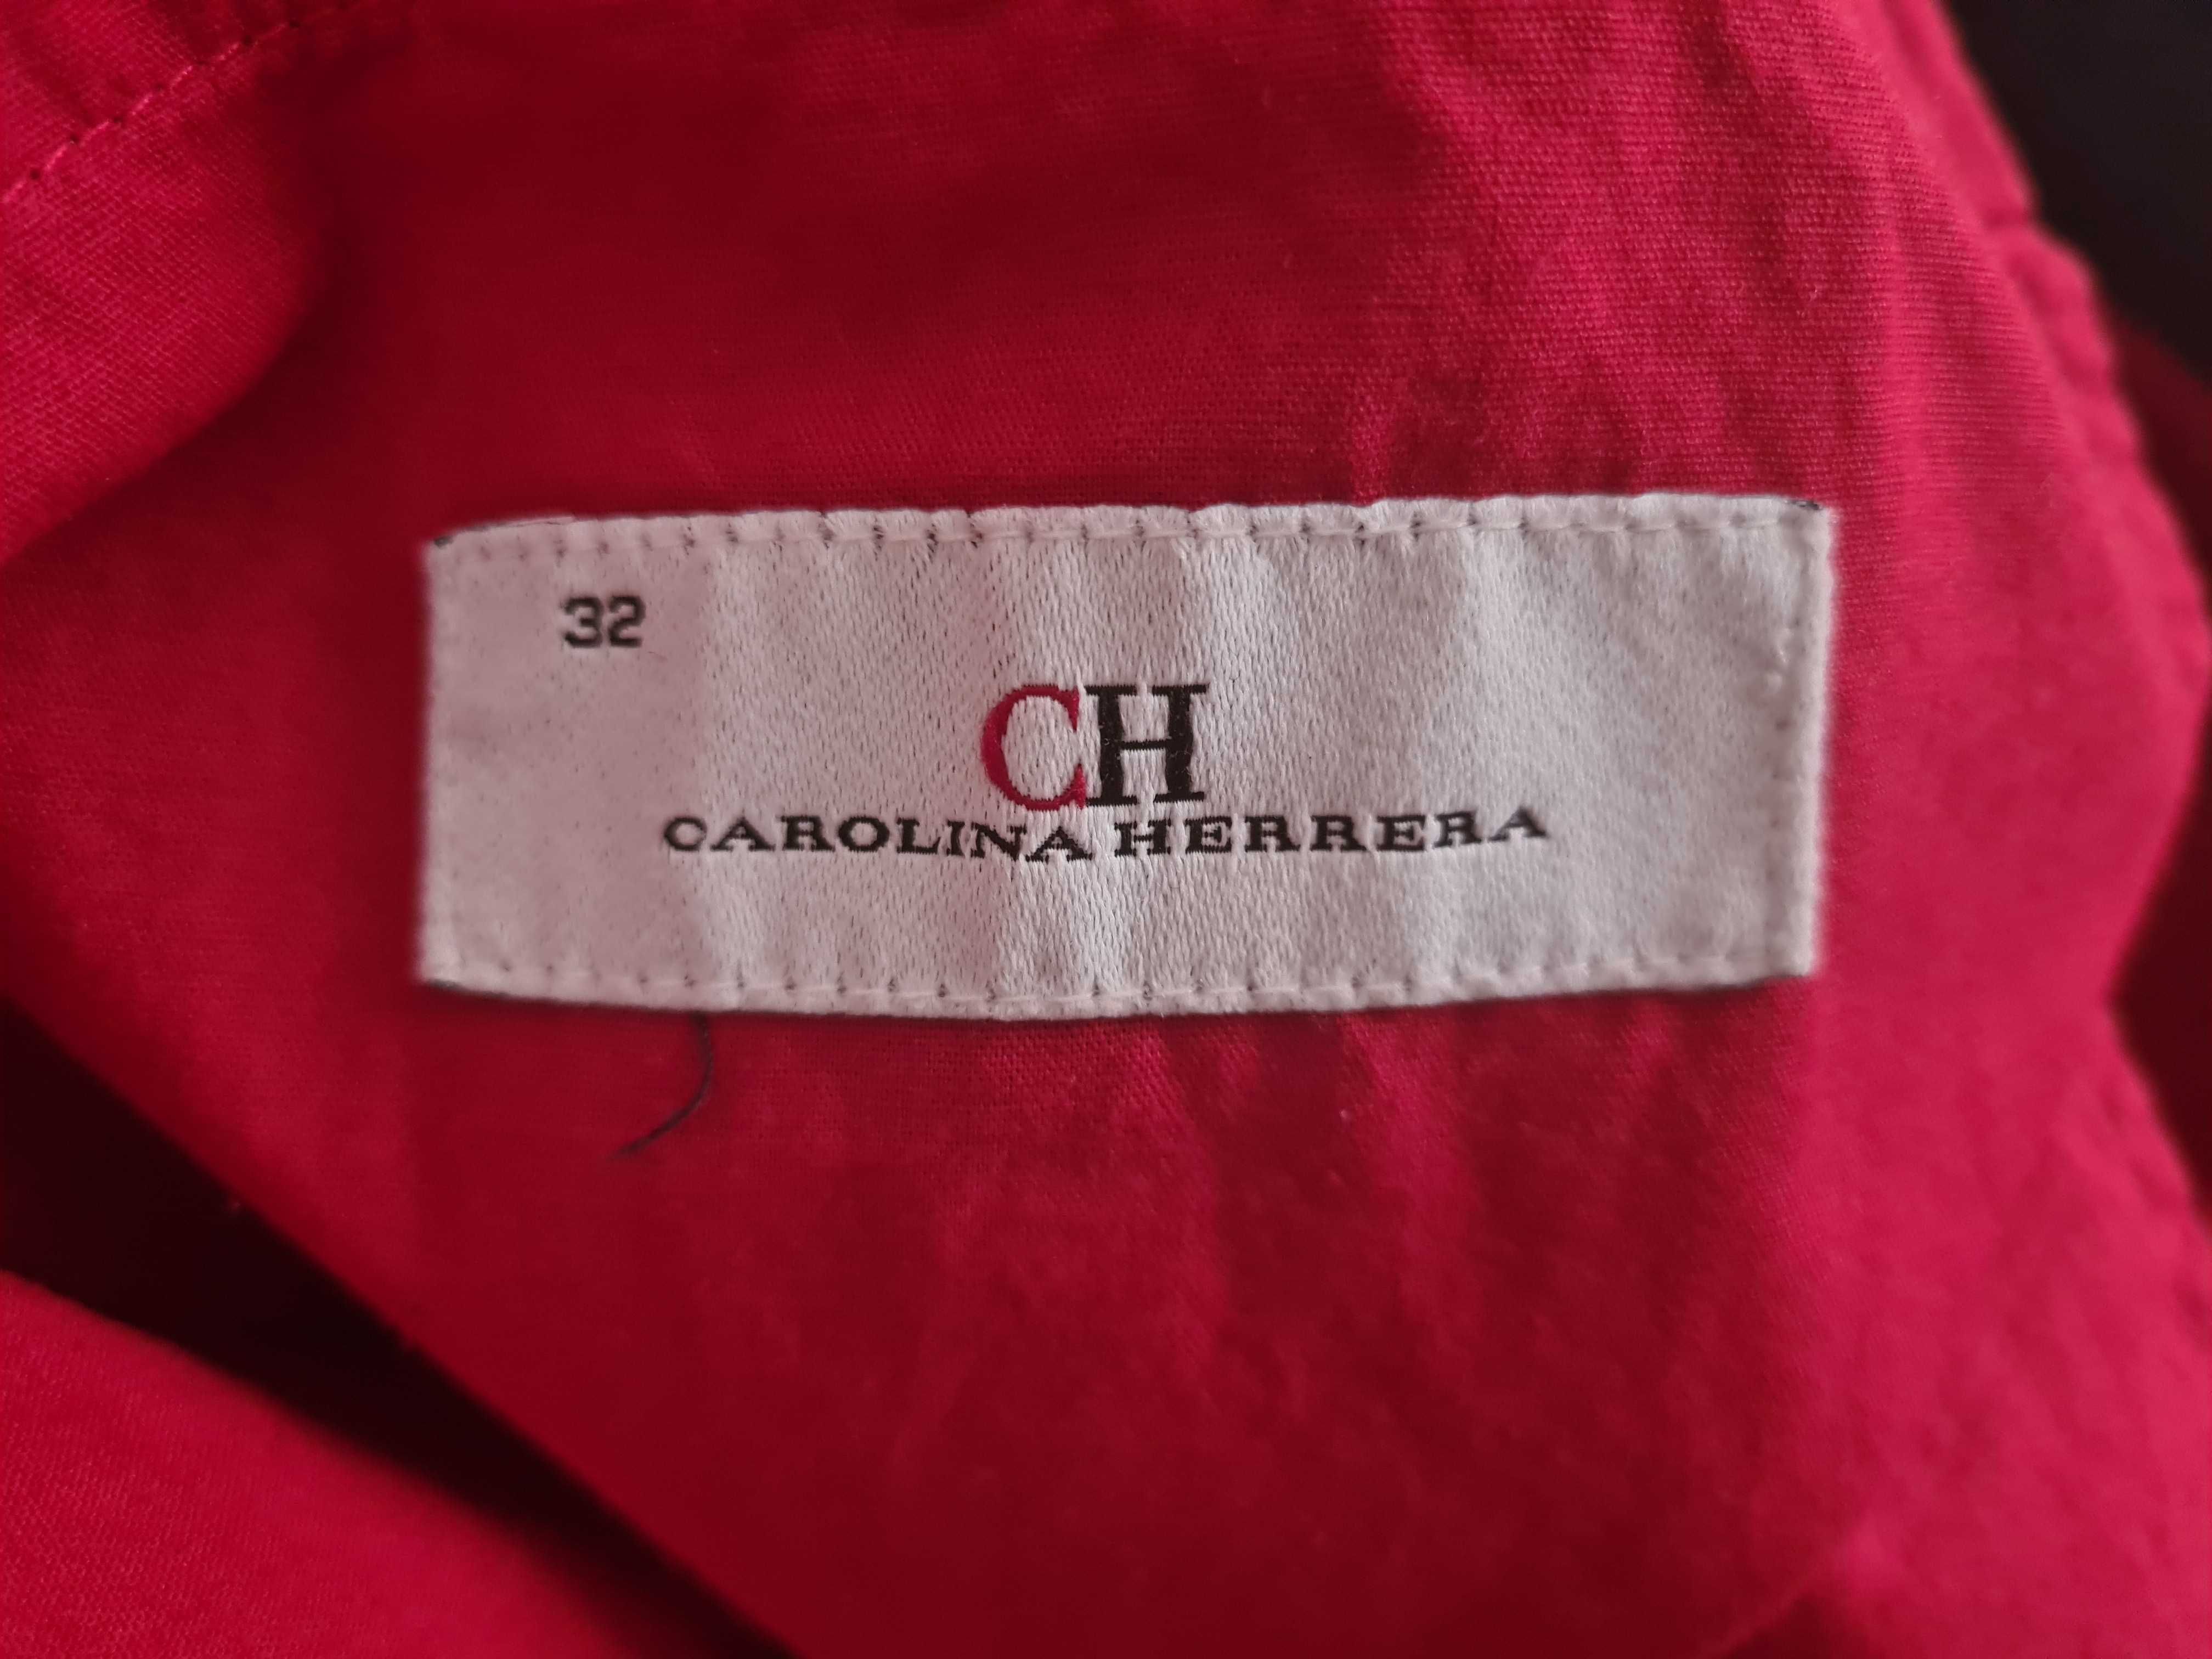 Vand pantaloni Carolina Herrera originali